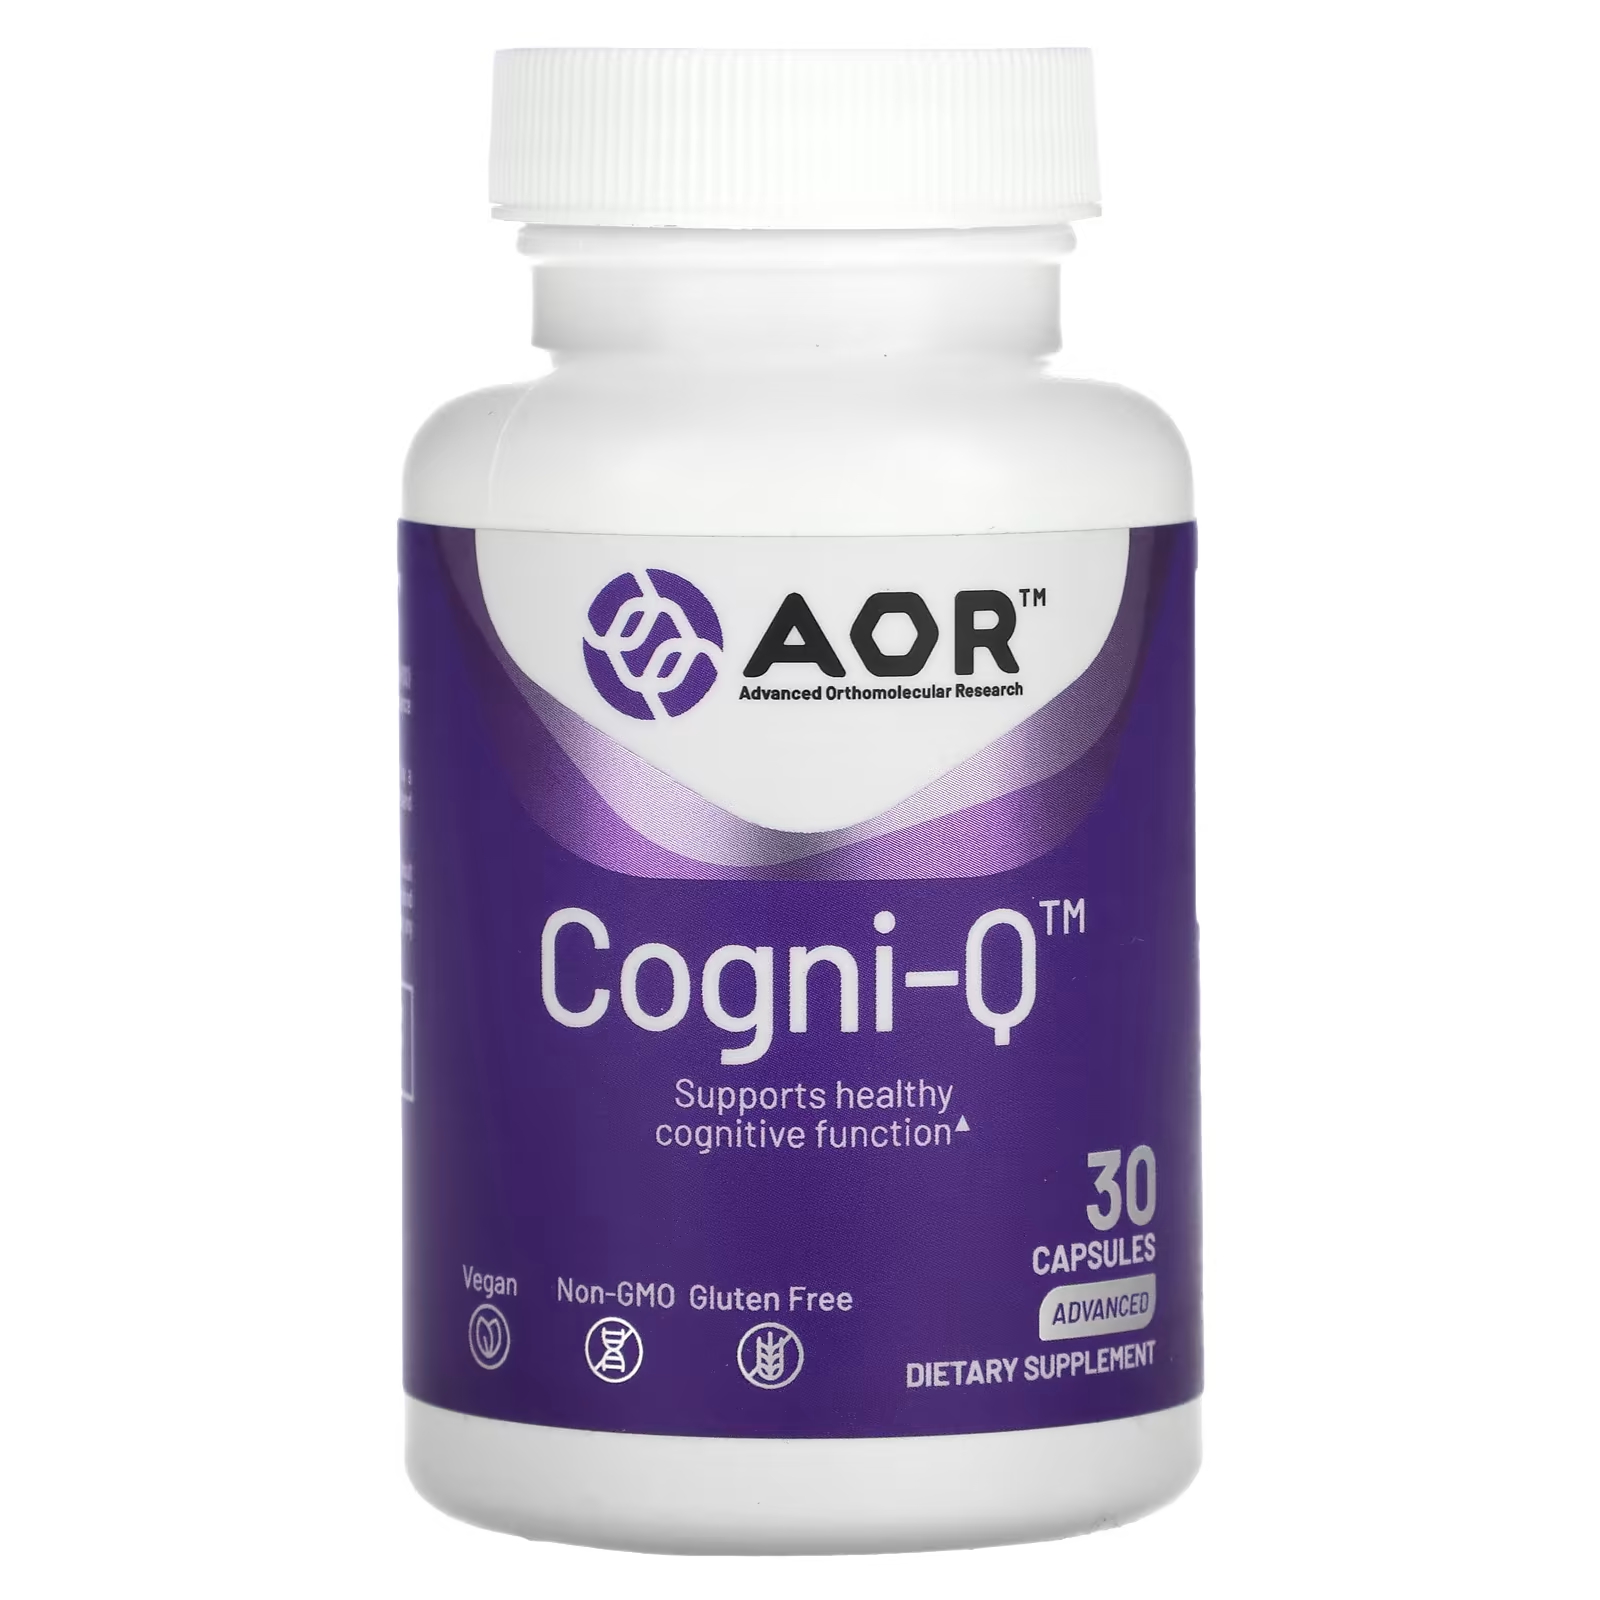 Передовые ортомолекулярные исследования AOR Cogni-Q, 30 капсул Advanced Orthomolecular Research AOR